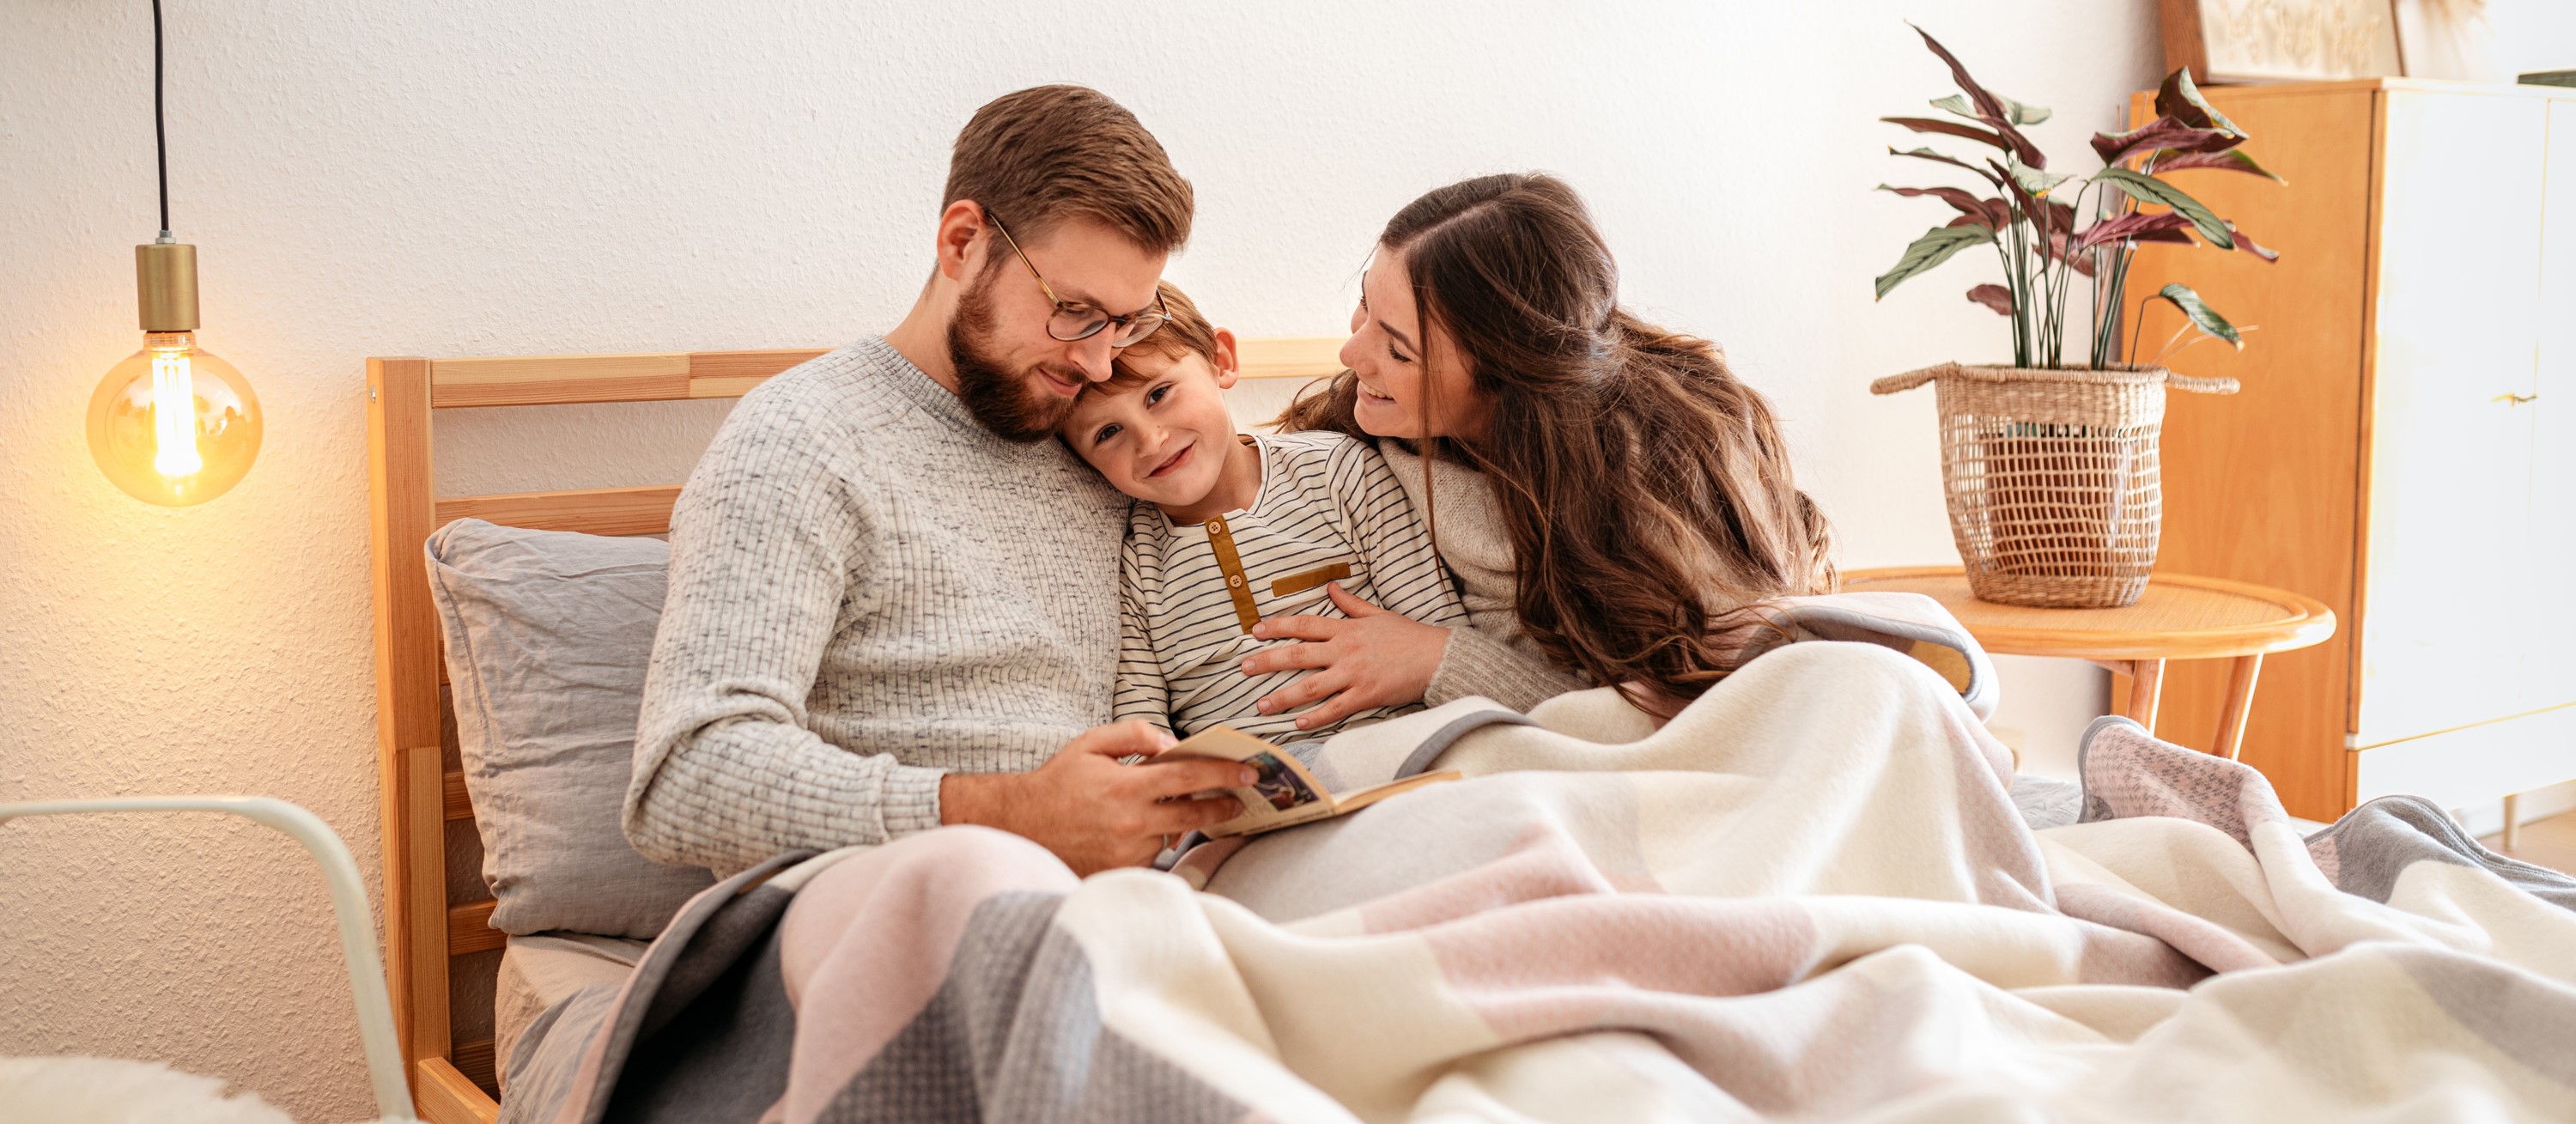 Emotionales Bild: Familie kuschelt im Bett mit Biederlack Kuscheldecke